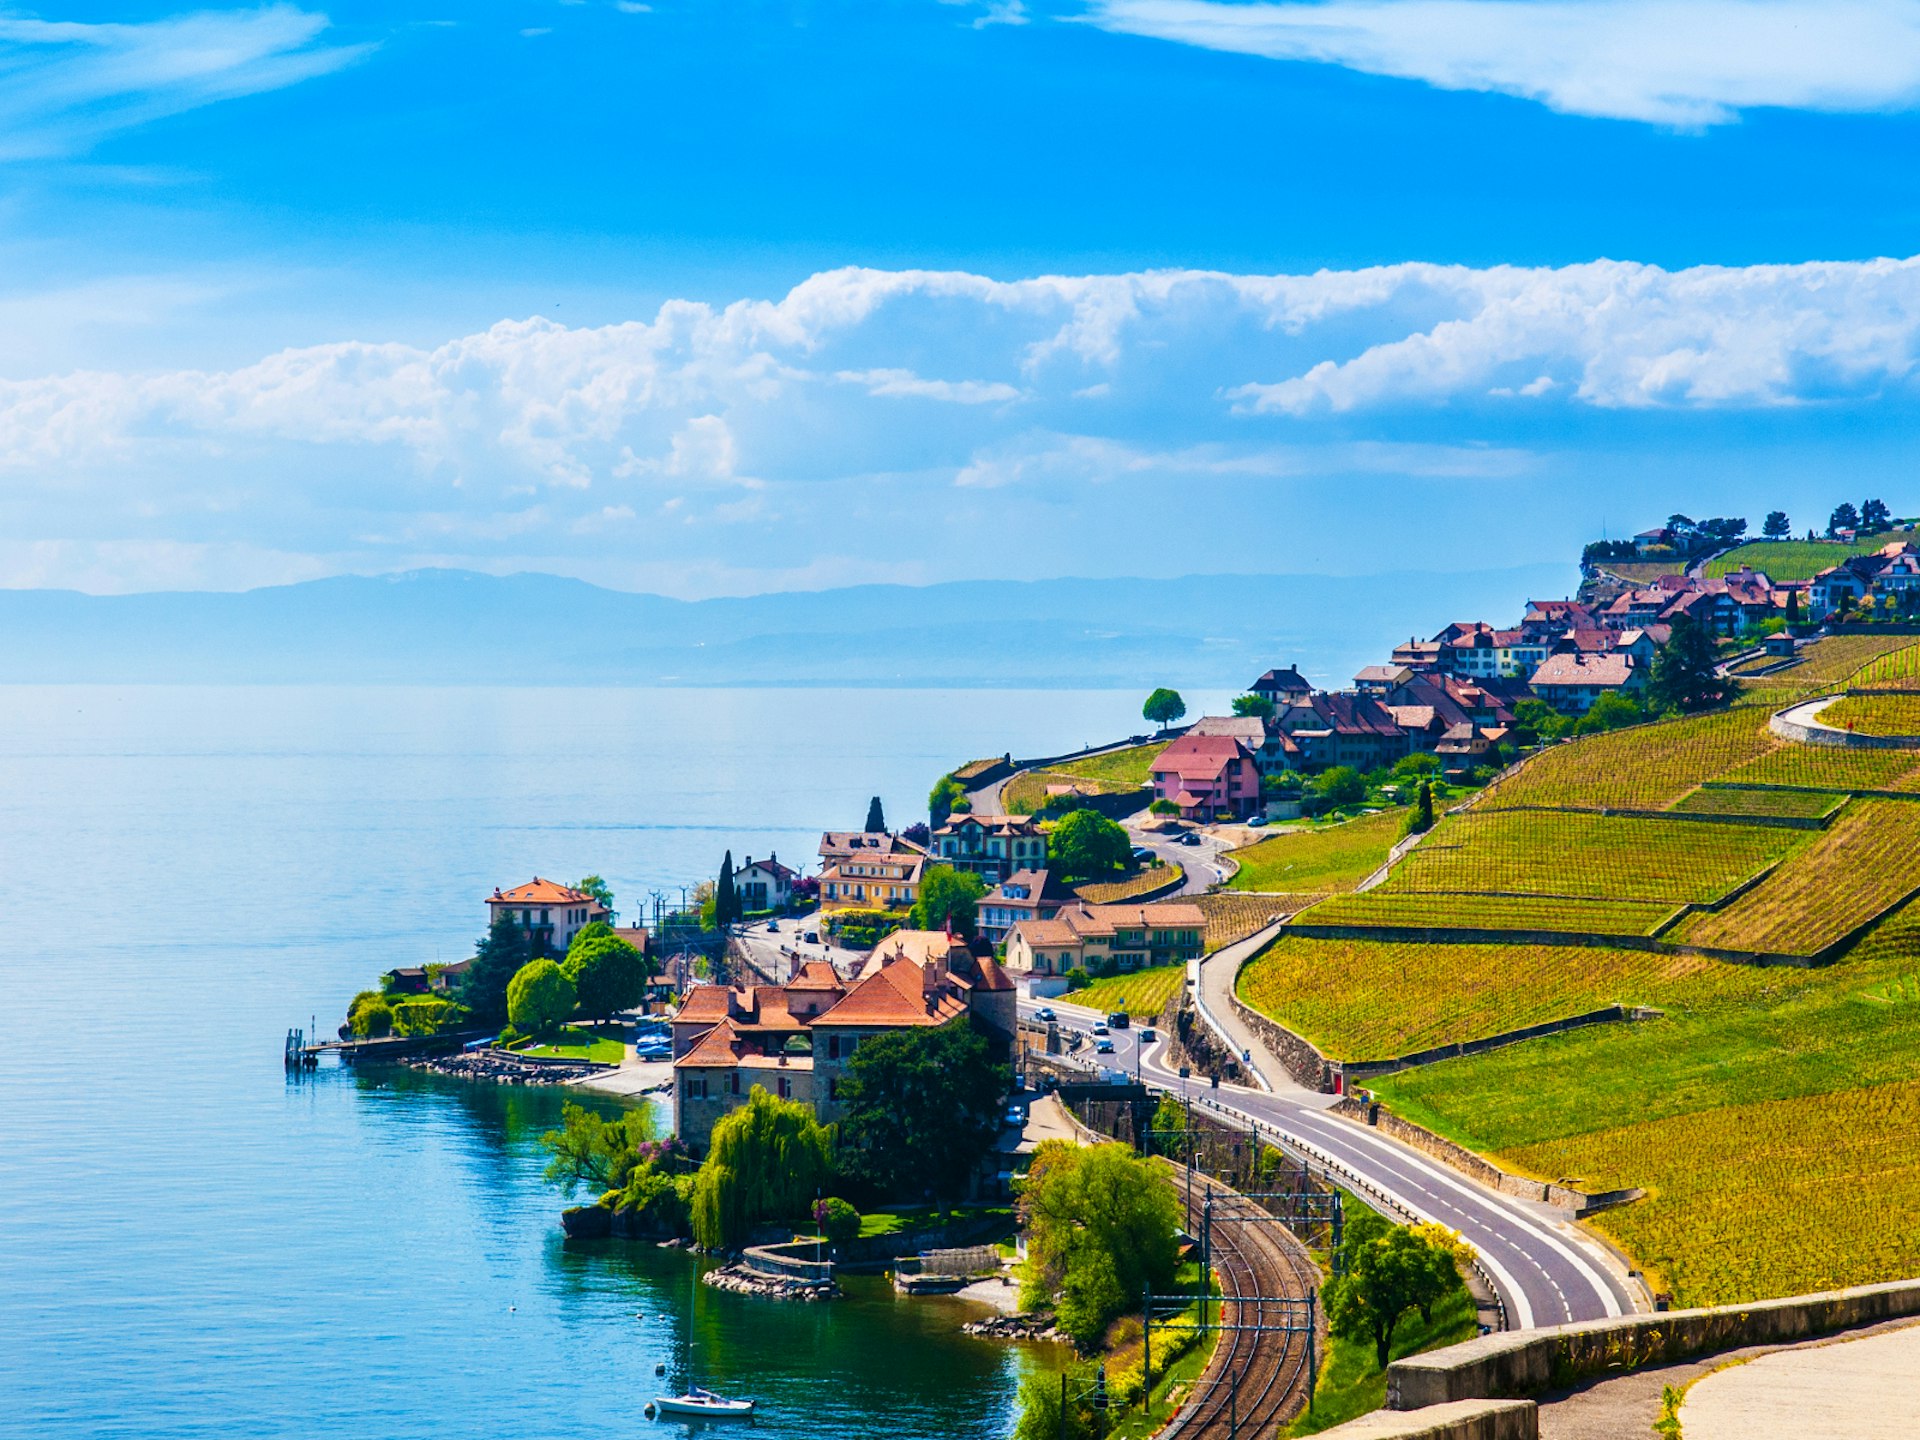 The World Heritage–listed vineyards of Lavaux set against Lake Geneva